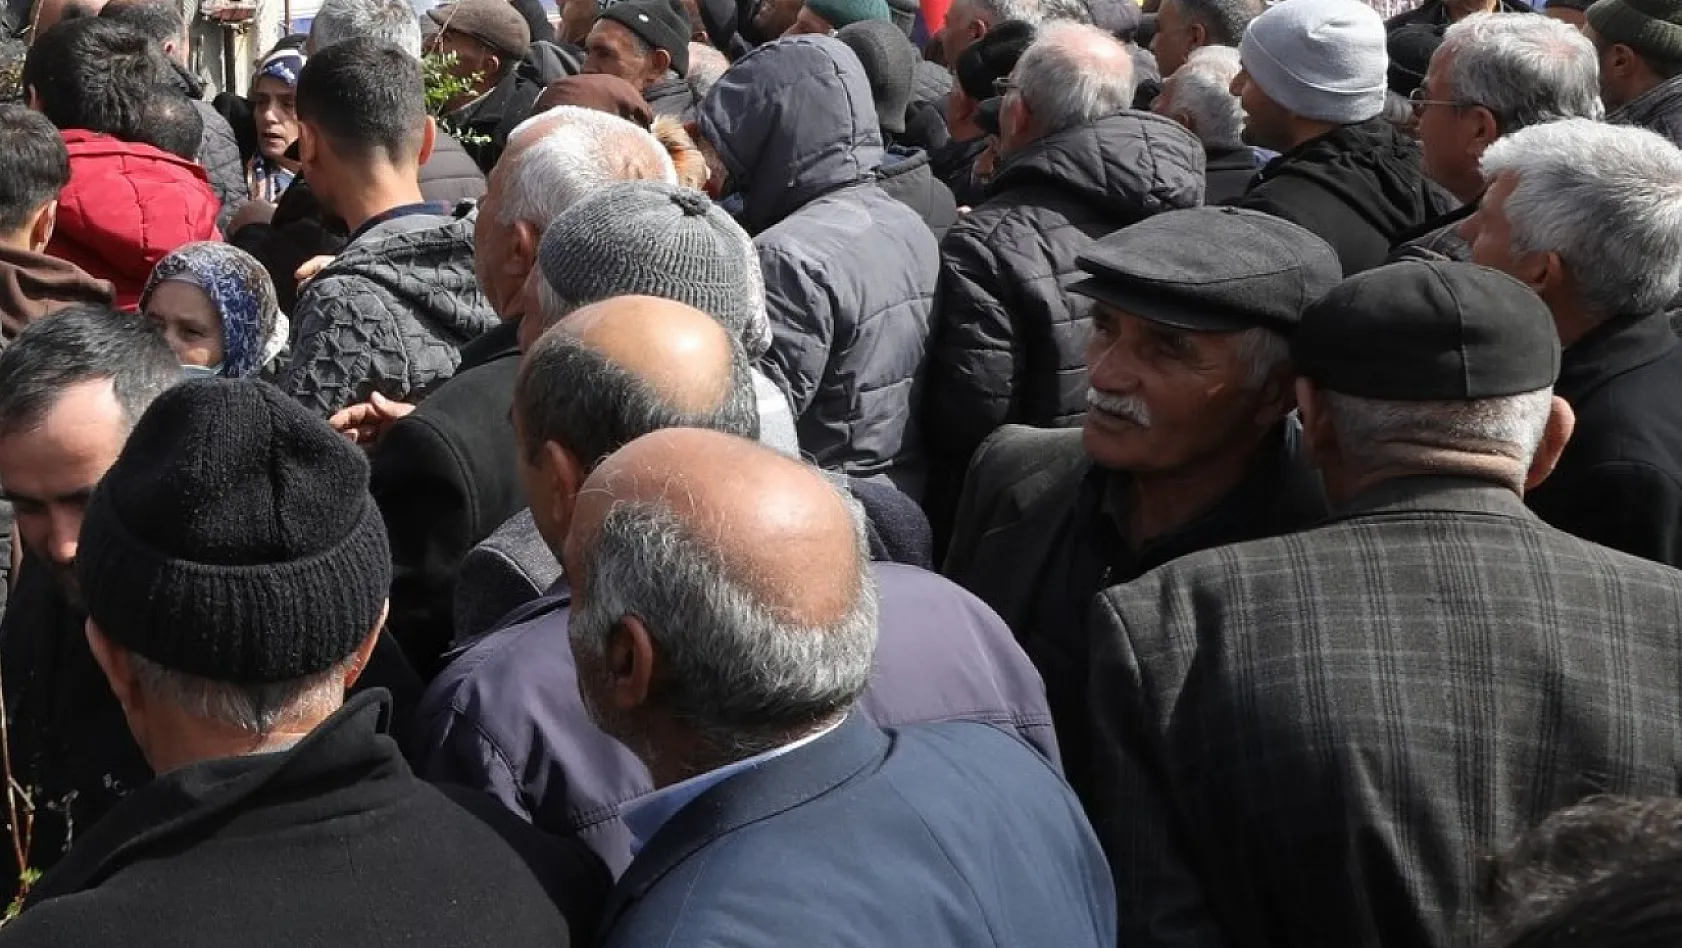 Kayseri'de Belediye ücretsiz dağıttı, vatandaş akın etti